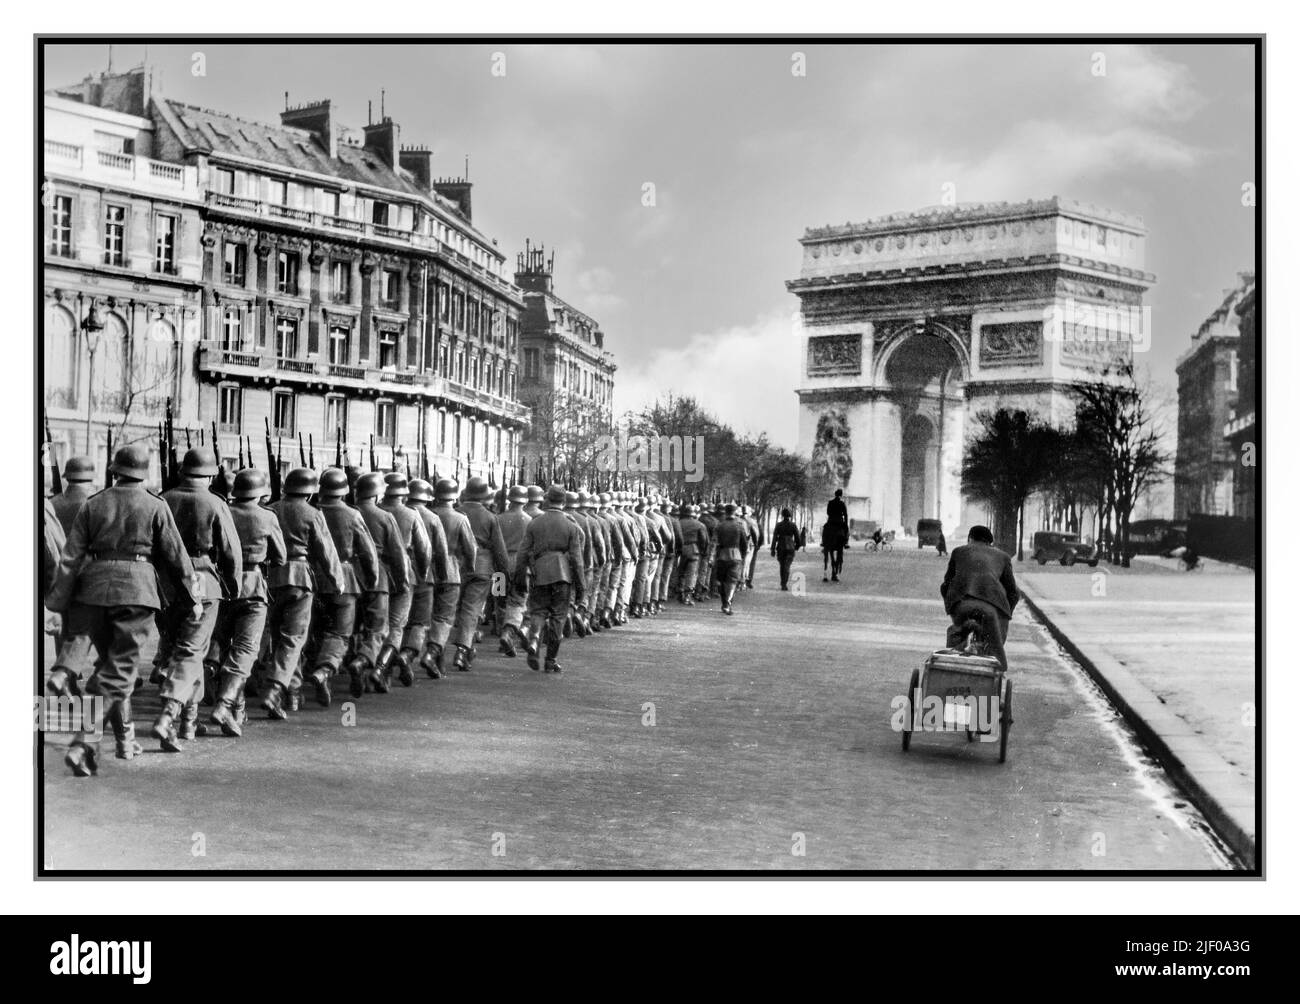 PARIGI OCCUPAZIONE NAZISTA GERMANIA WW2 14 giugno 1940, le truppe naziste Wehrmacht marciano a Parigi senza combattere. Fu dichiarata città aperta dal governo francese per evitare la sua distruzione. Arco di Trionfo sullo sfondo Parigi Francia. Seconda guerra mondiale seconda guerra mondiale Foto Stock